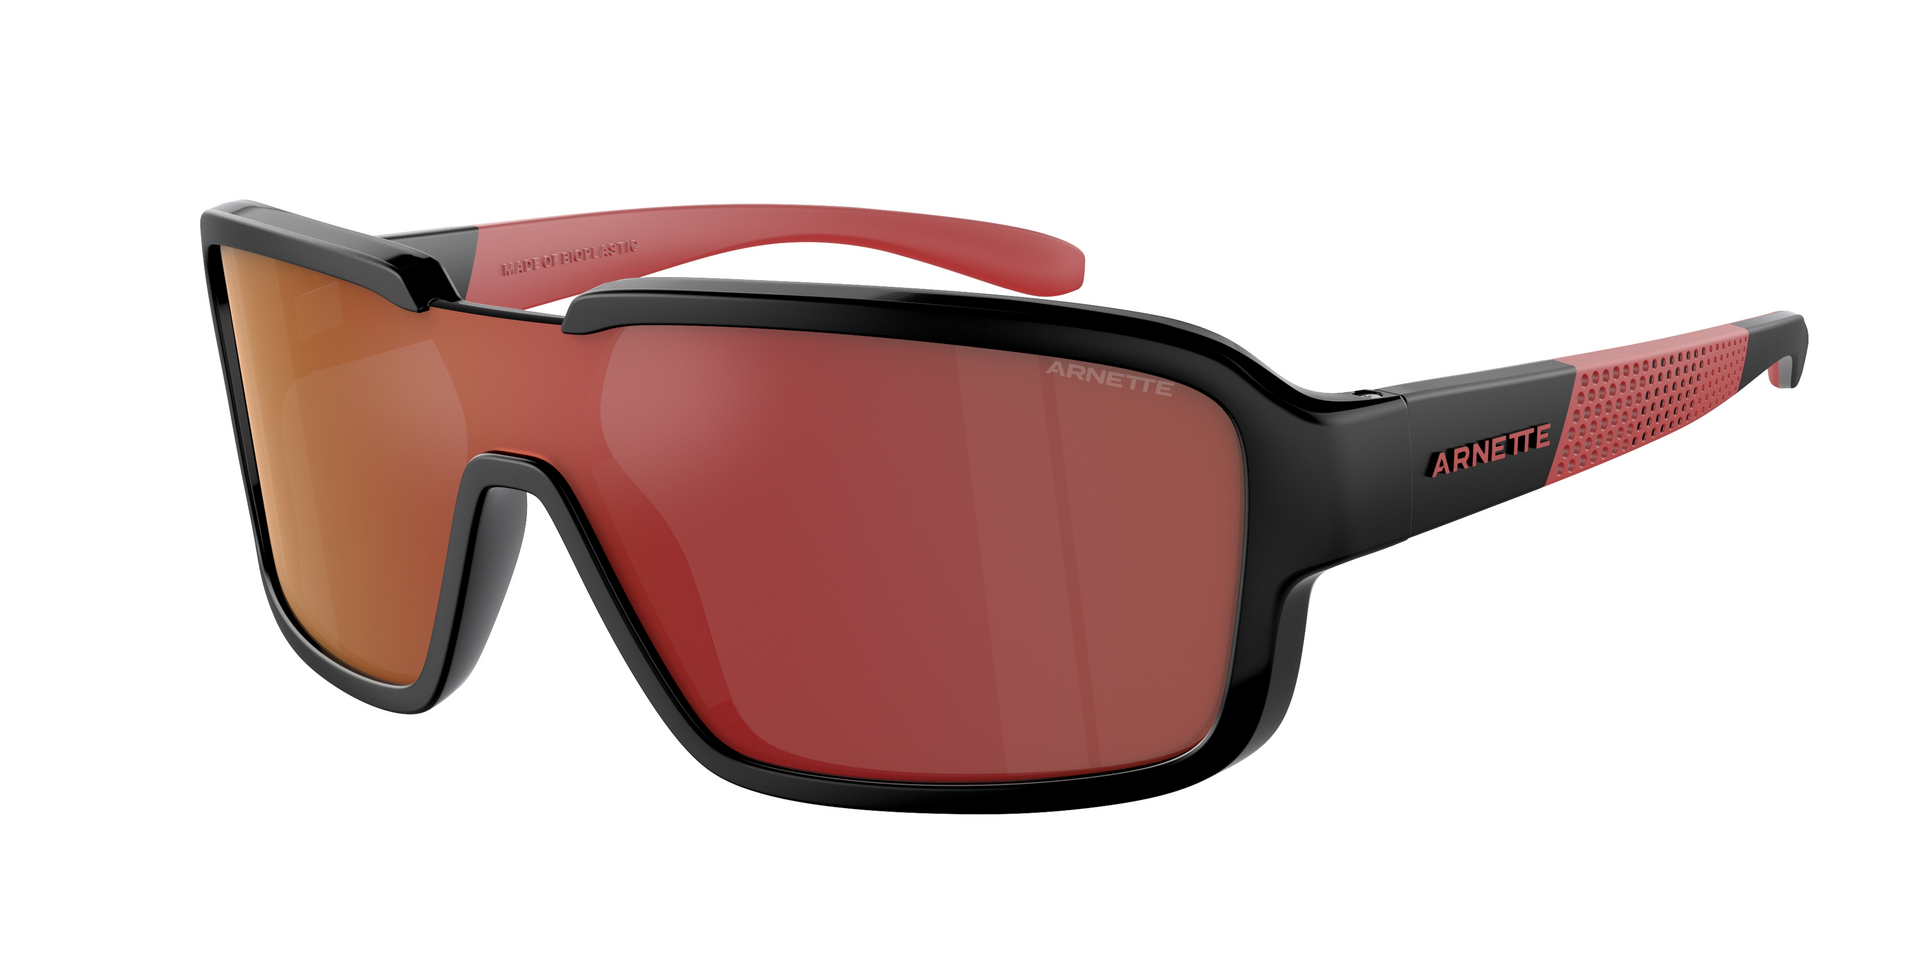 Das Bild zeigt die Sonnenbrille AN4335 27536Q von der Marke Arnette in schwarz/rot.